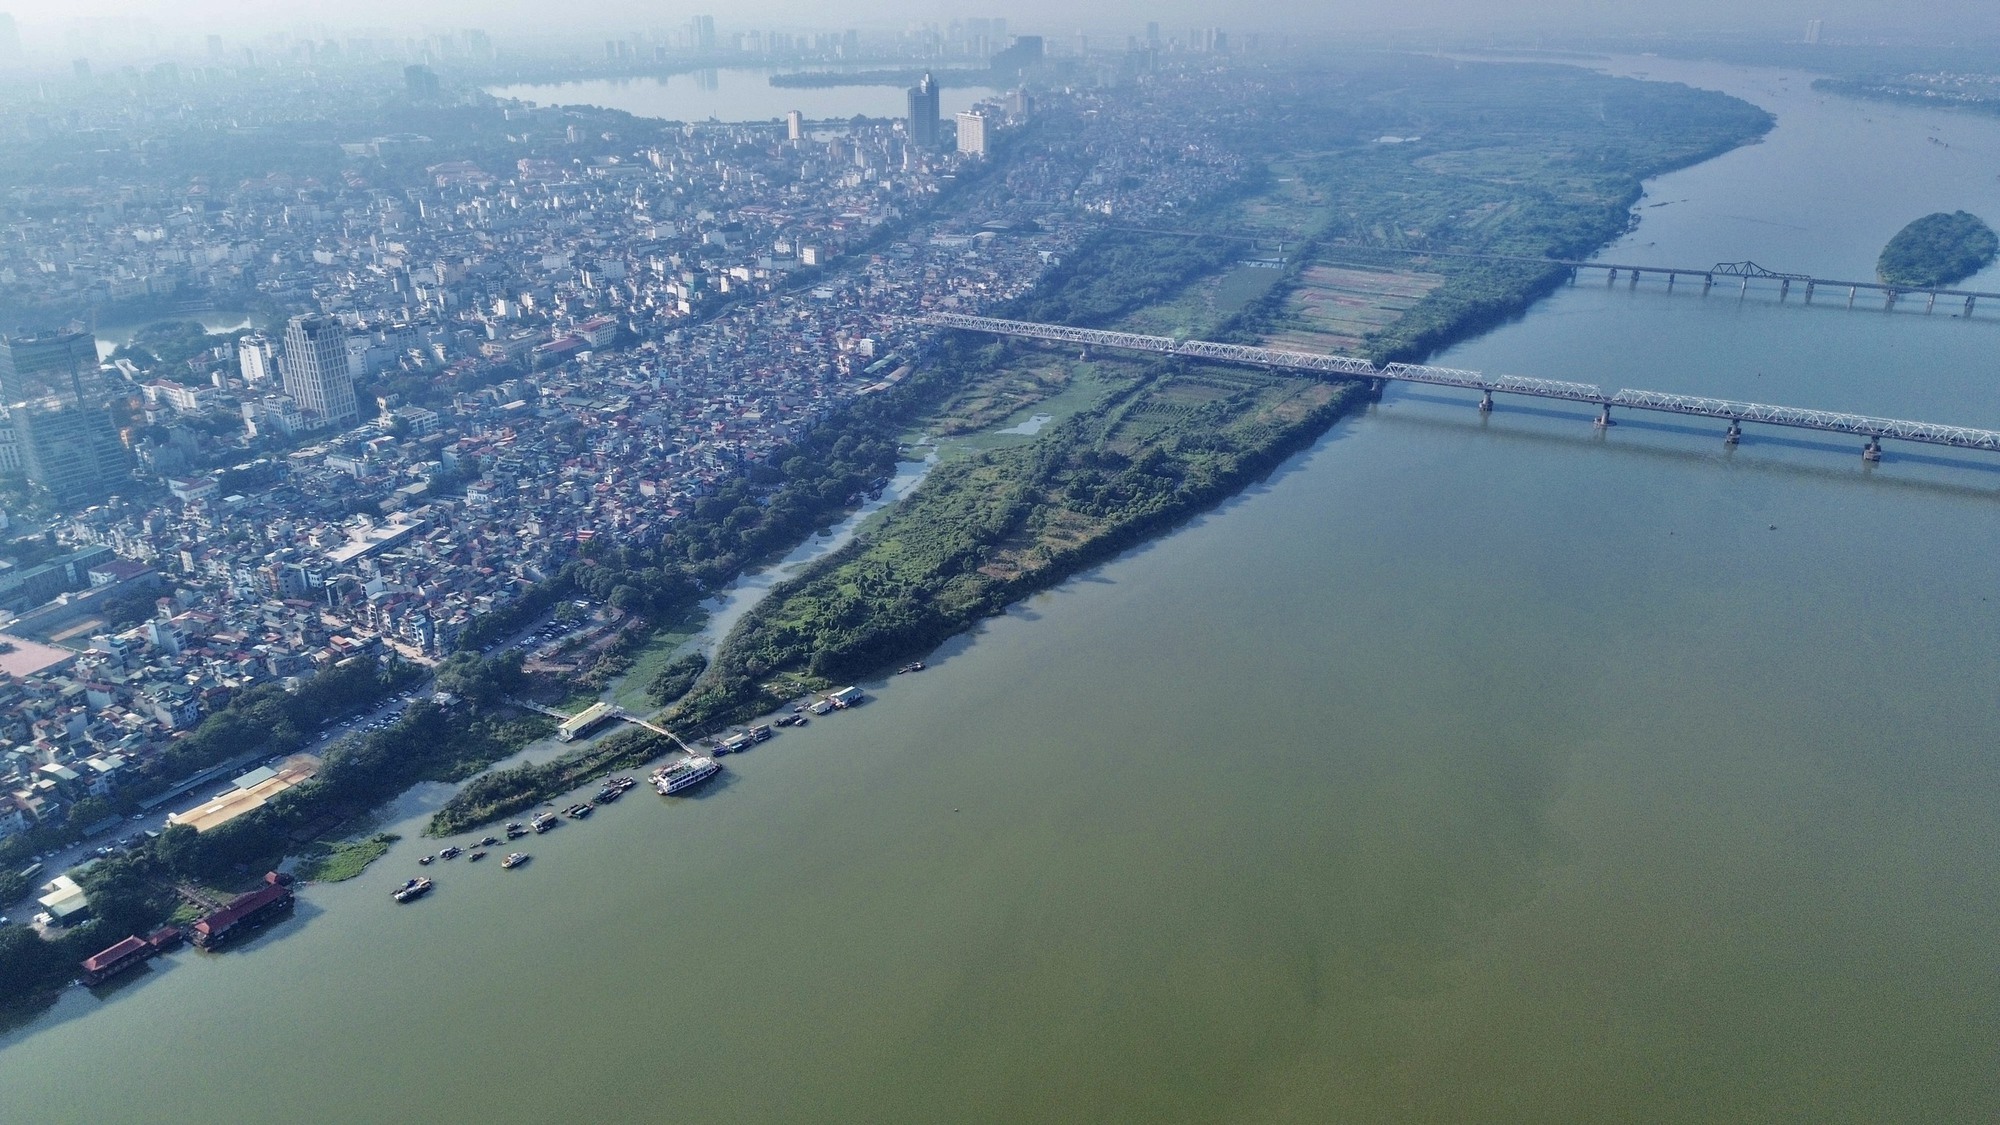 Phê duyệt công viên cây xanh: Bãi giữa sông Hồng thành khu canh tác - Ảnh 8.